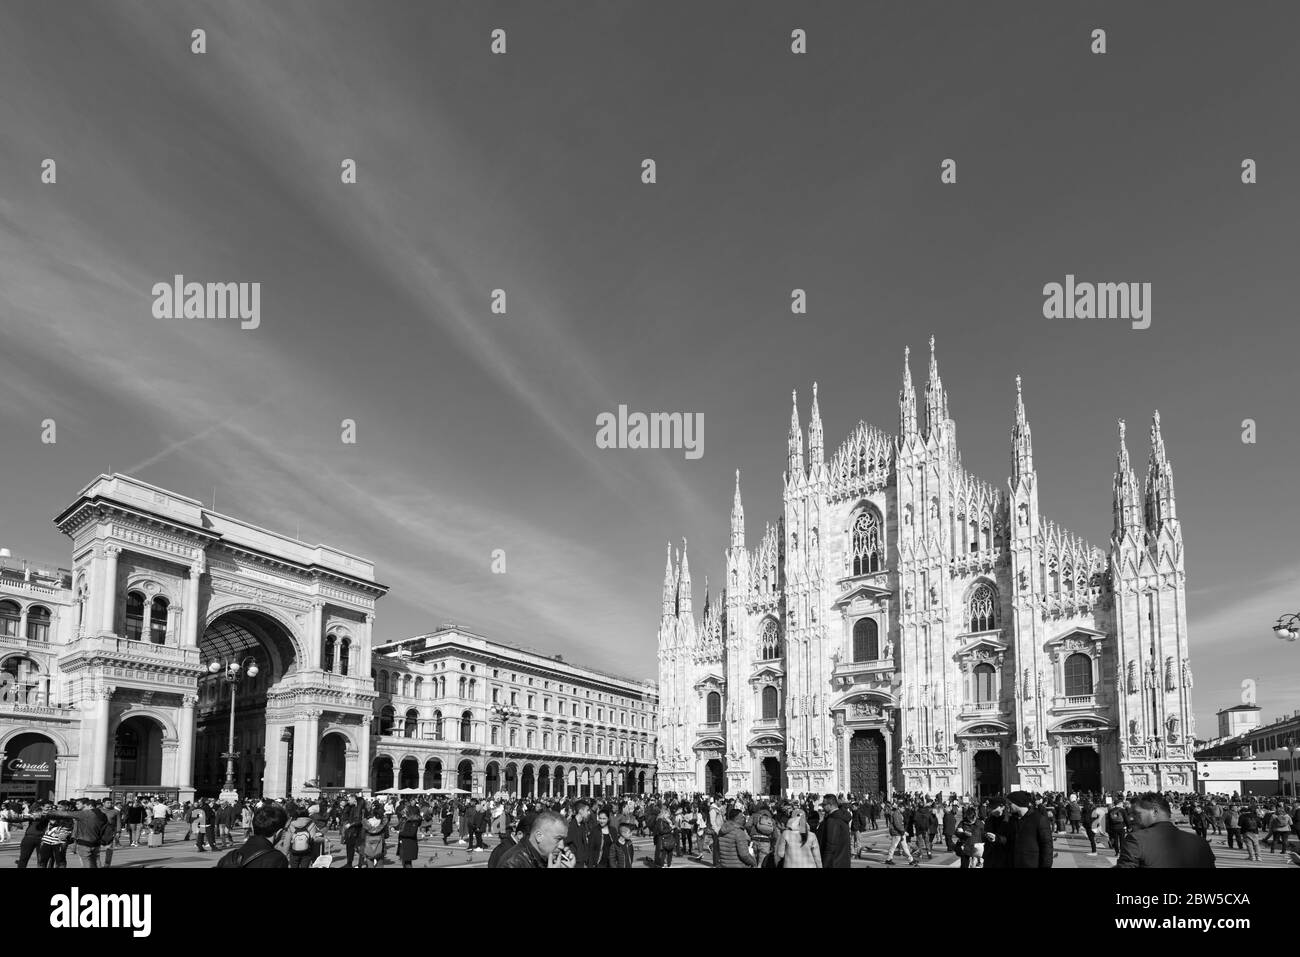 MILÁN, ITALIA - 16, MARZO de 2018: Imagen en blanco y negro del Duomo di Milano y la Galería Vittorio Emanuele II durante el día soleado en Milán, Italia. Foto de stock